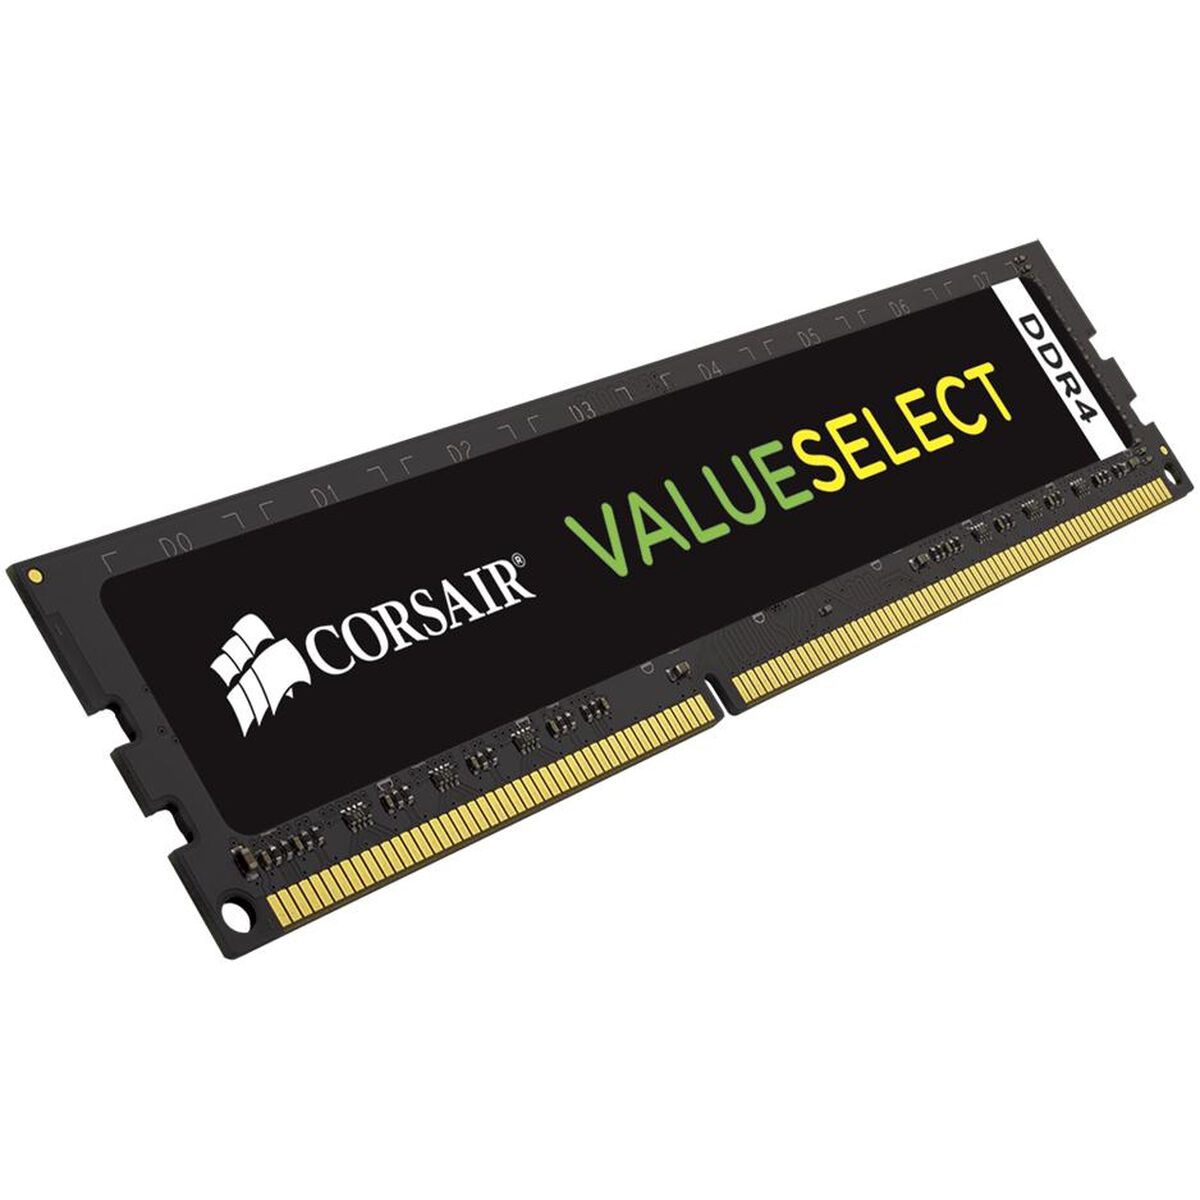 Mémoire RAM Corsair Value Select 8GB PC4-17000 CL15 2133 MHz DDR4 8 GB DDR4-SDRAM